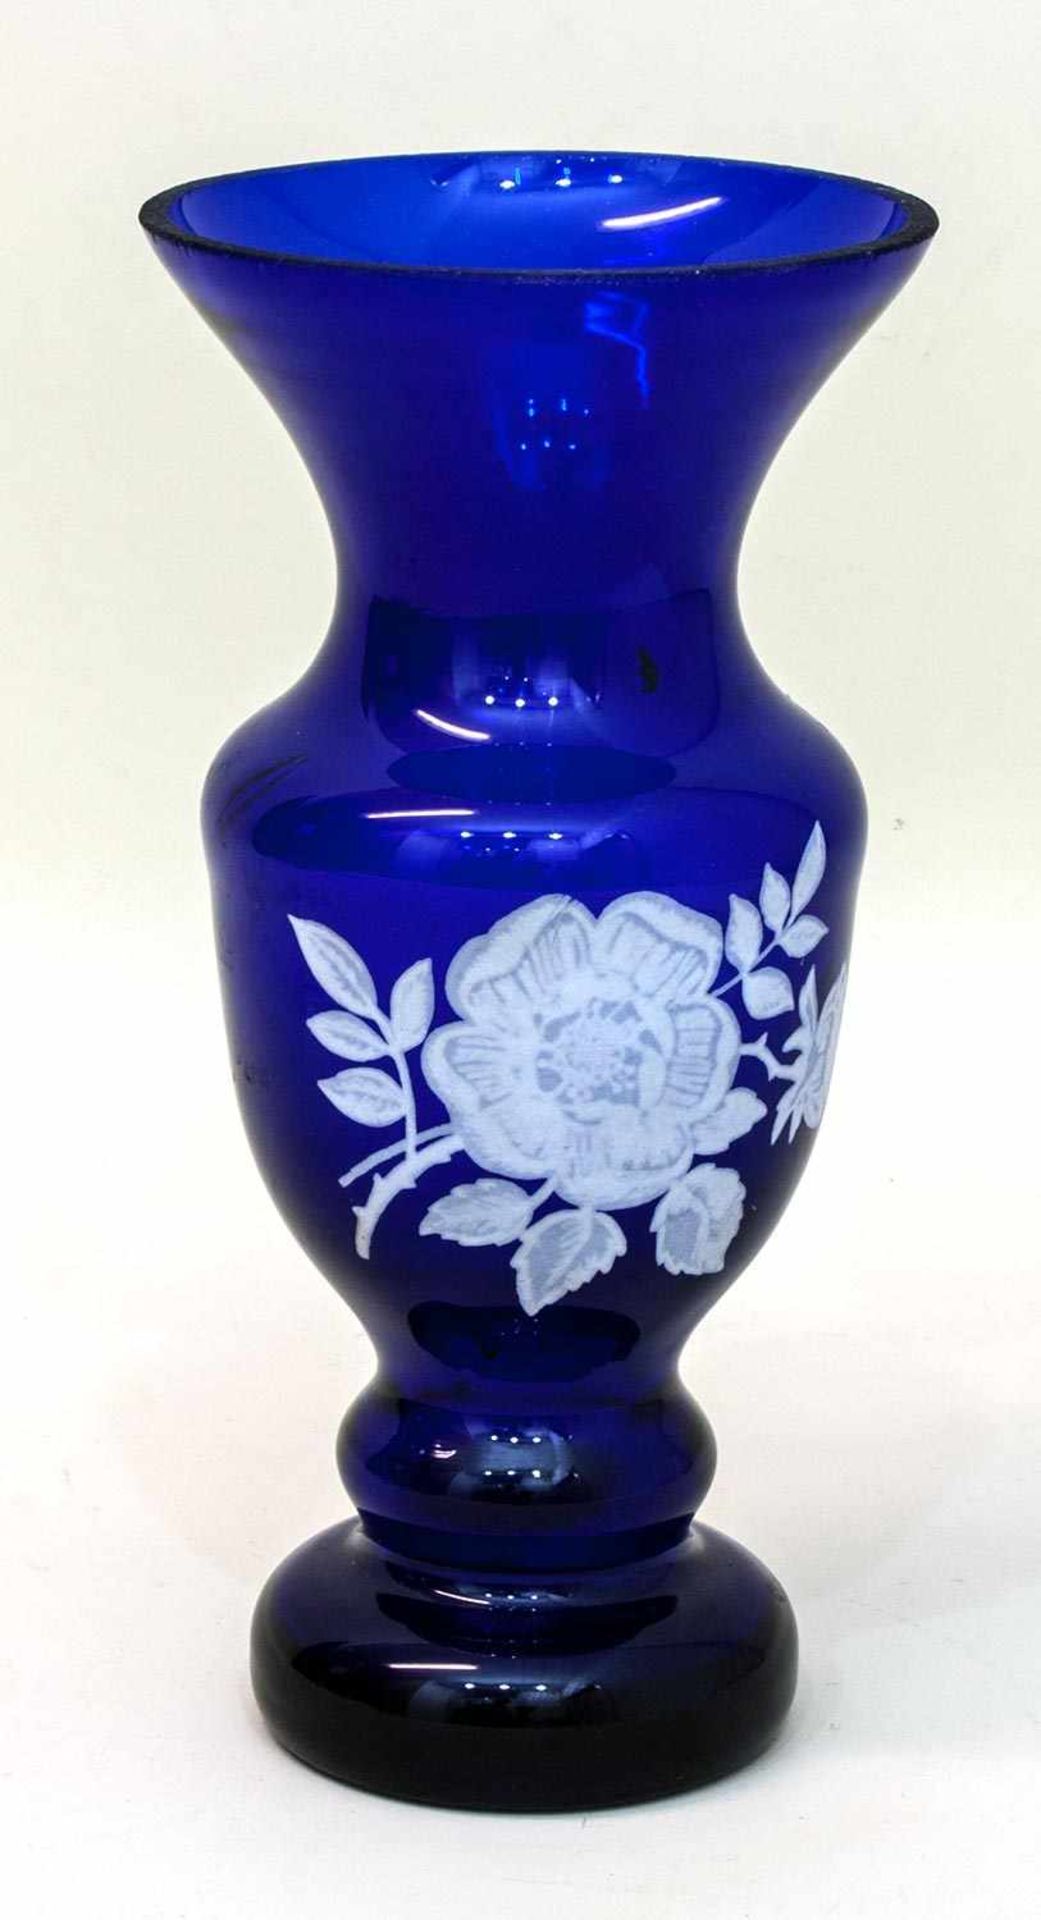 Blauglasvase 2. Drittel 19. Jh., Blauglas mit Schneemalerei, Balusterform, H. 21 cm